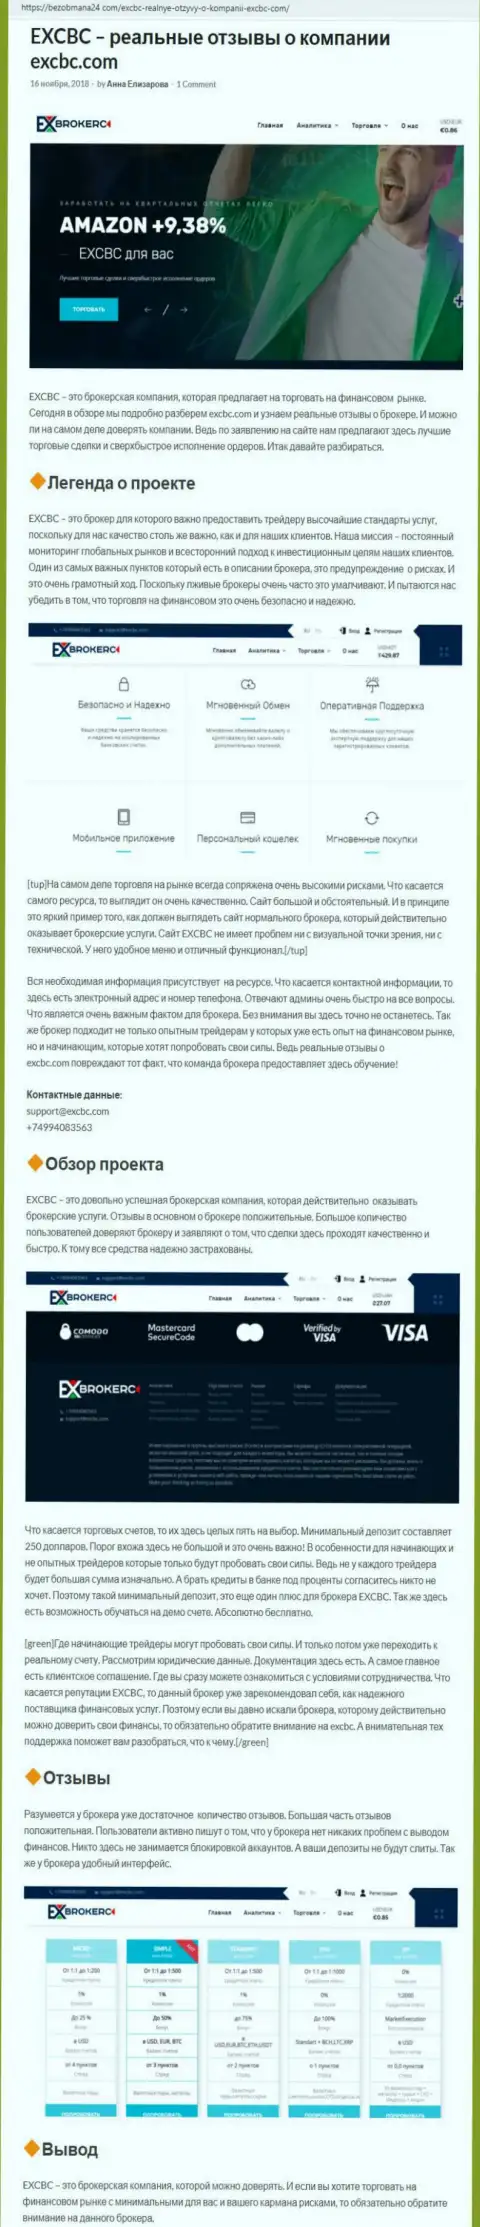 Точка зрения web-сервиса BezObmana24 Com о ФОРЕКС дилинговой компании EXCBC